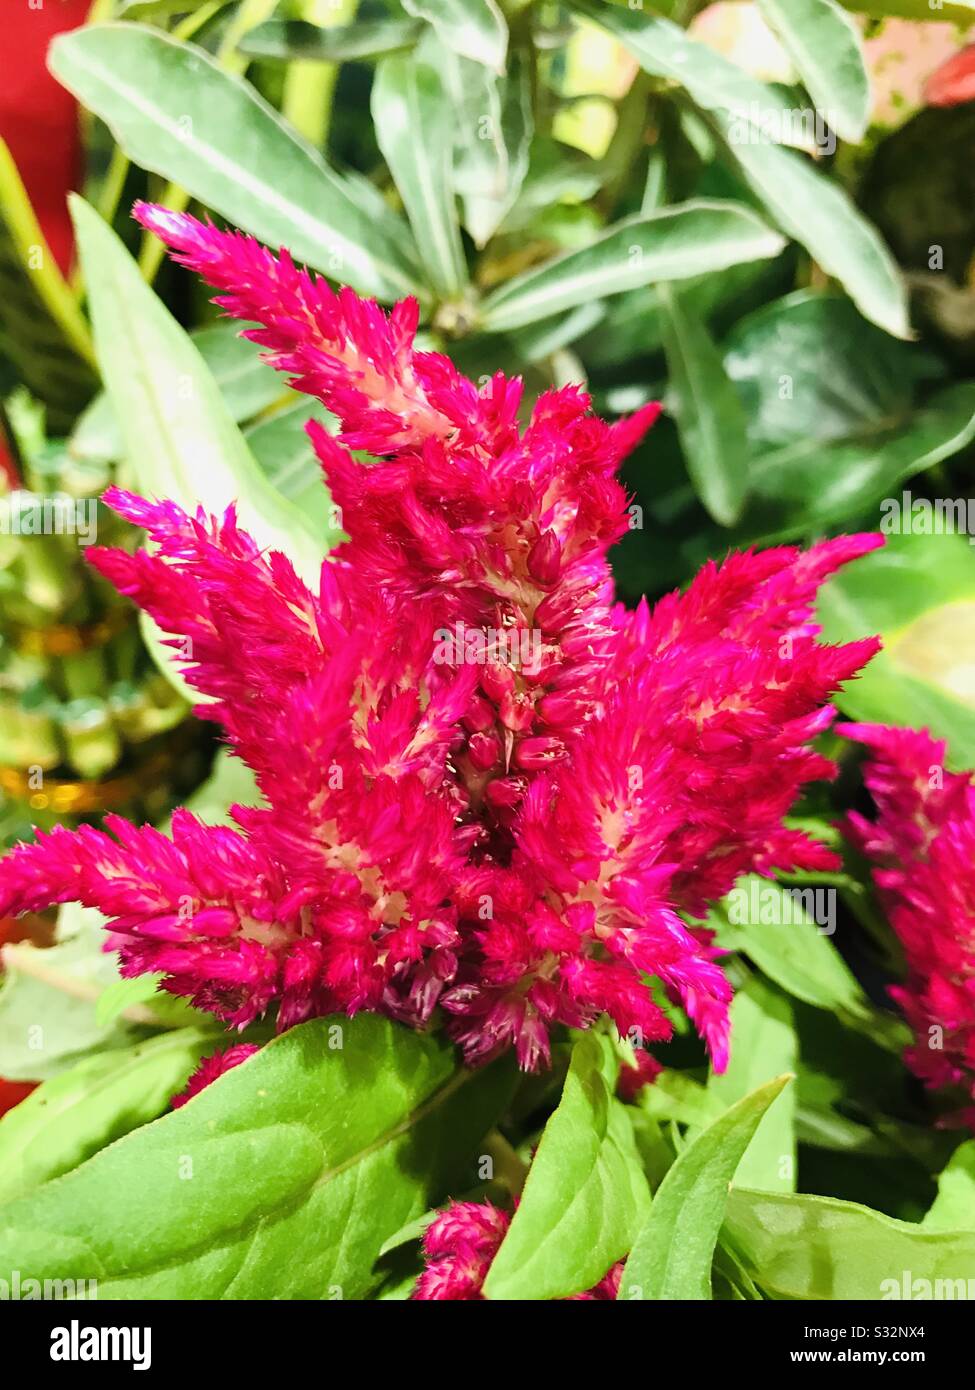 Celosia è un piccolo genere di pianta commestibile e ornamentale ,fiore rosso per Capodanno cinese Vendita, Fairy come fiore aka fiore di lana, un close up snap Foto Stock